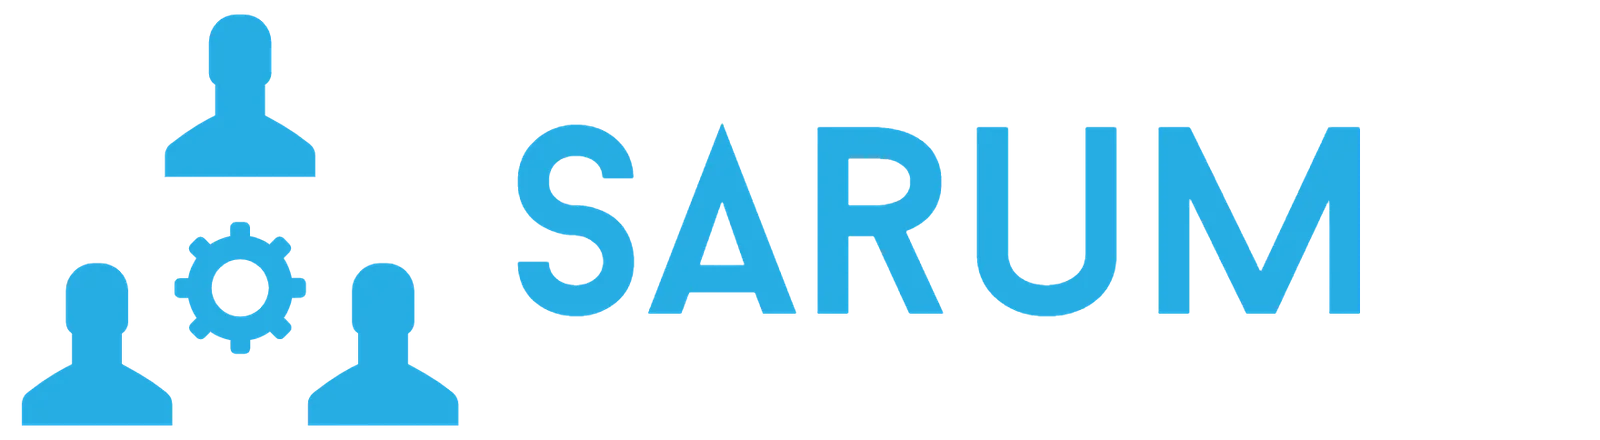 Sarum LLC